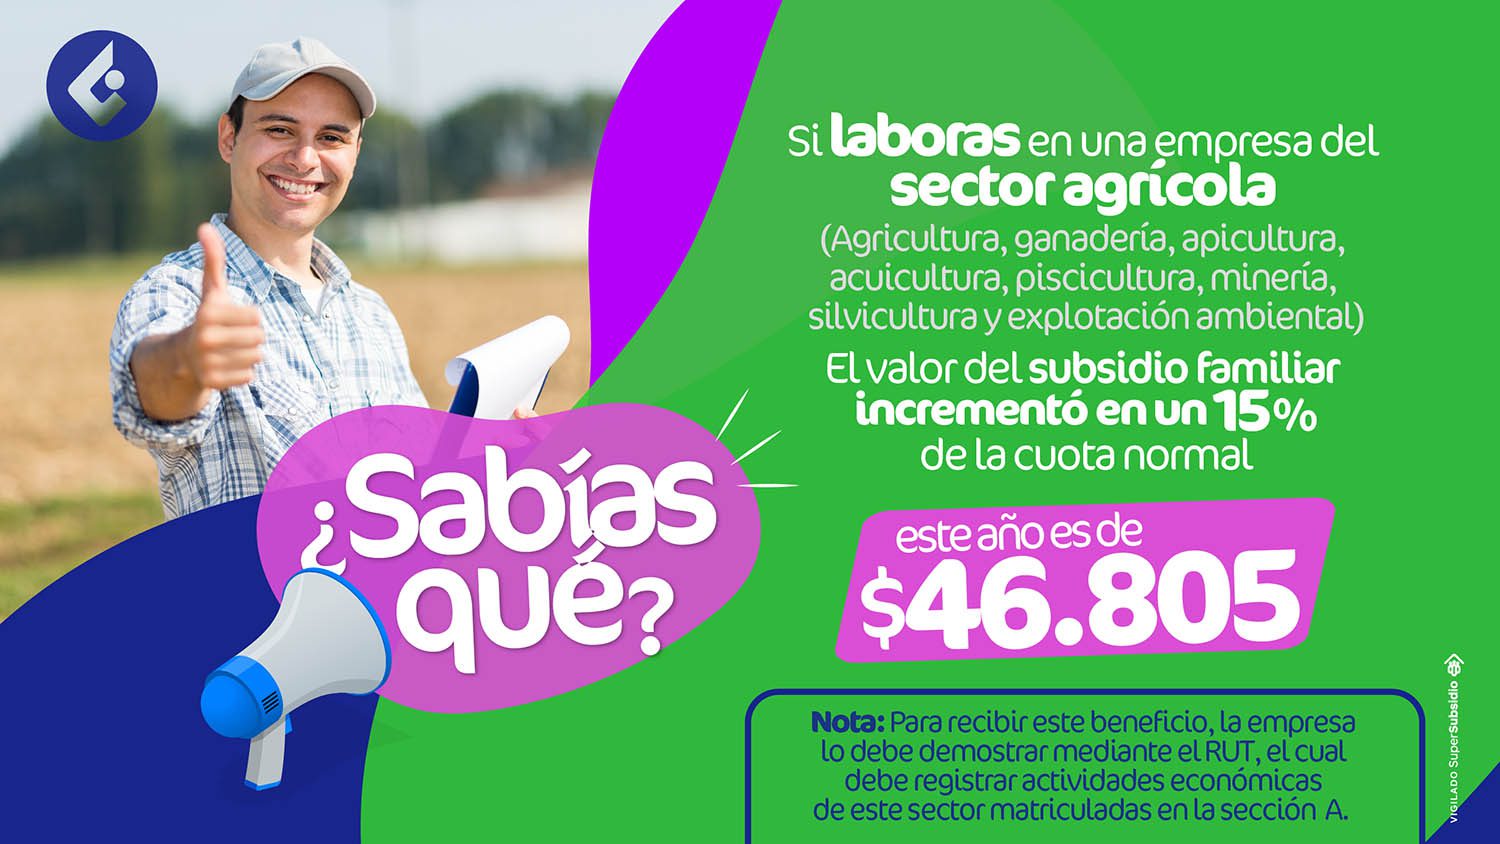 si laboras en una empresa del sector agrícola, el valor del subsidio incrementó en un 15% de la cuota normal